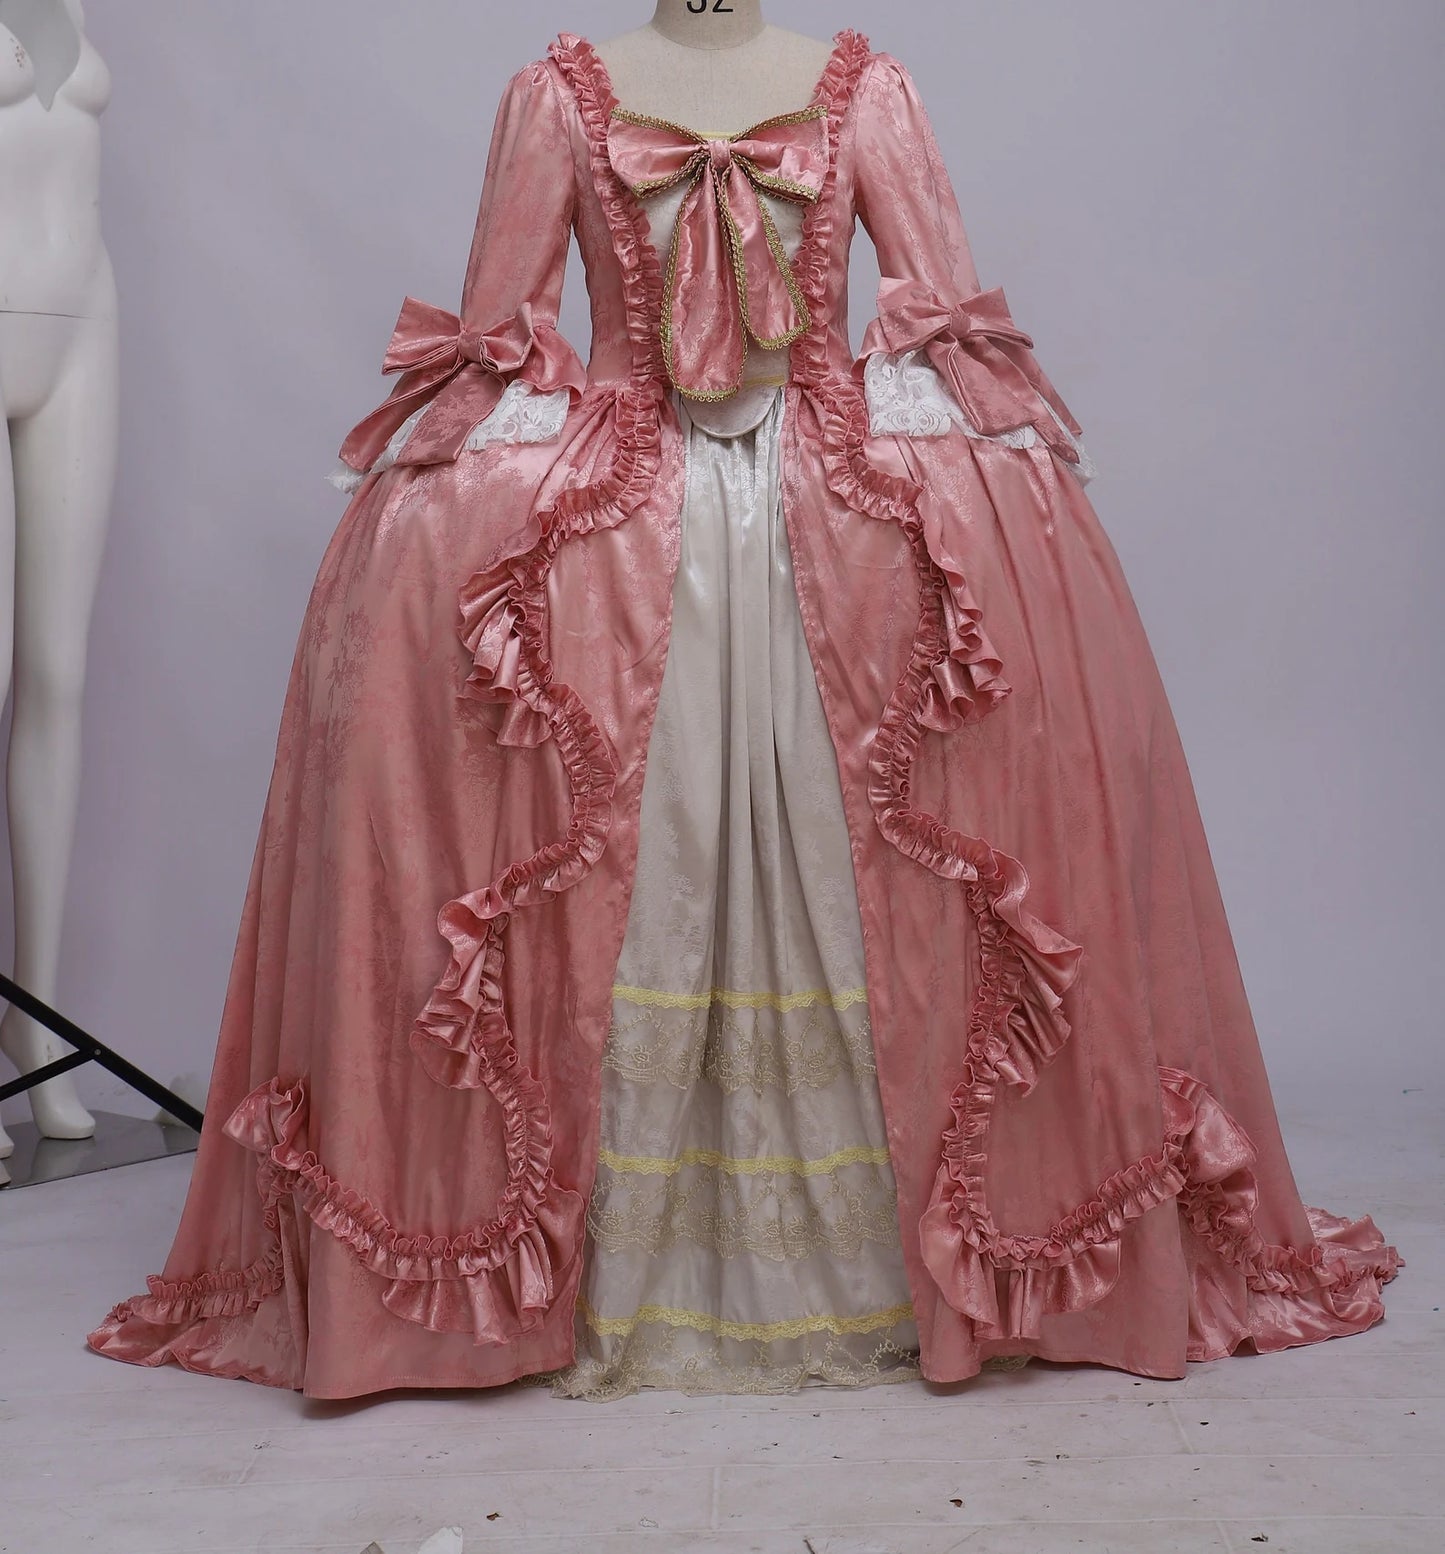 Marie Antoinette dress